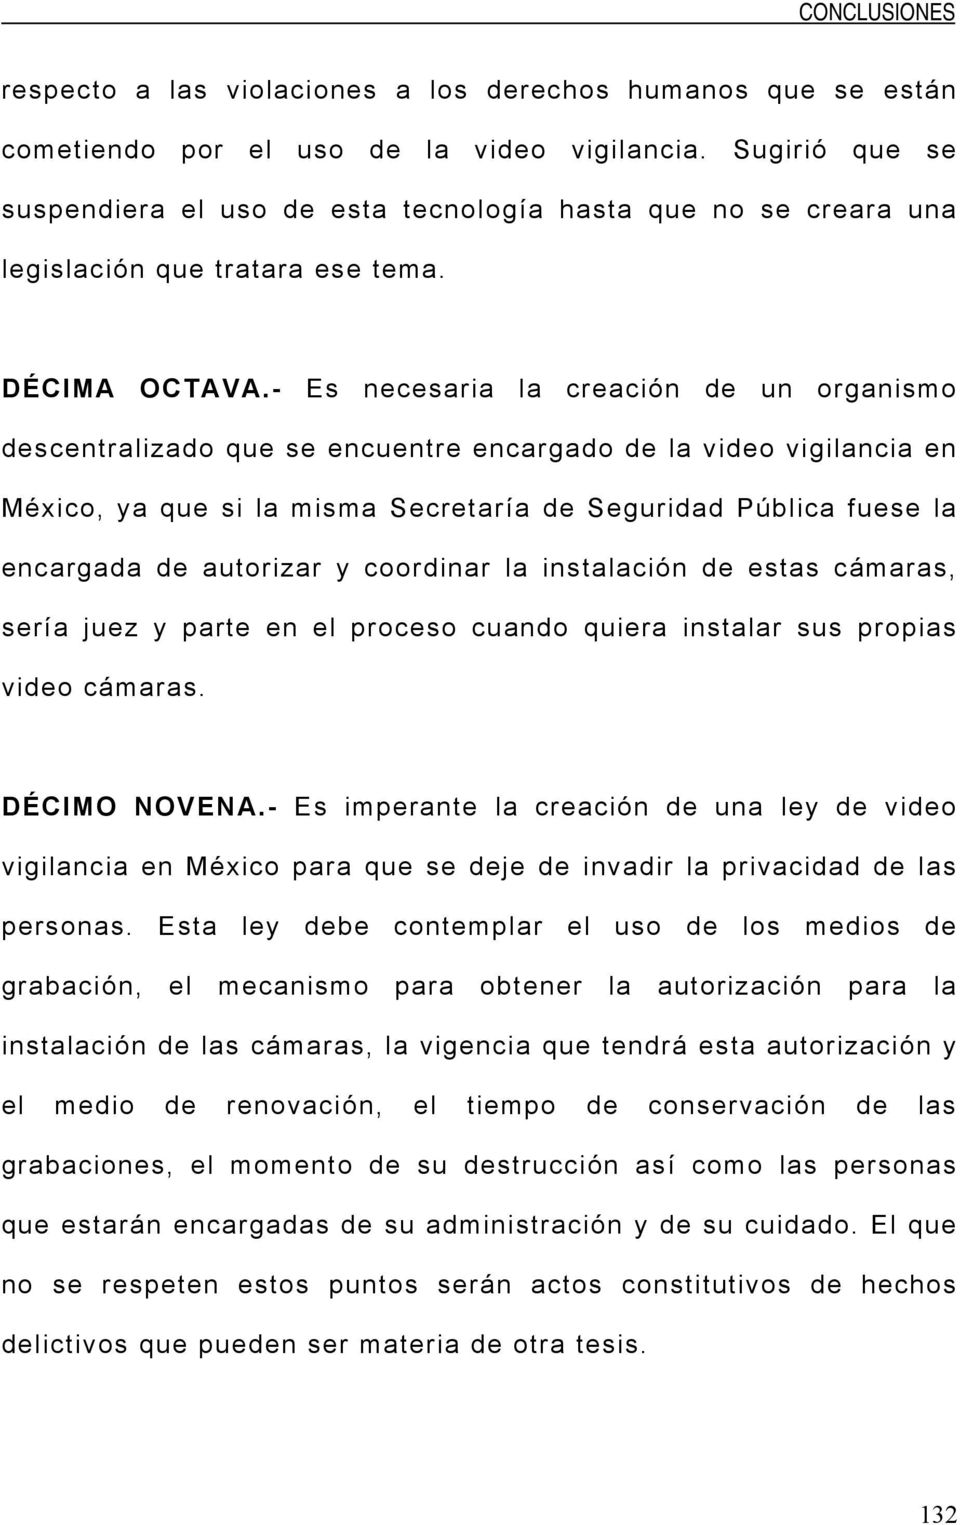 - Es necesaria la creación de un organismo descentralizado que se encuentre encargado de la video vigilancia en México, ya que si la misma Secretaría de Seguridad Pública fuese la encargada de